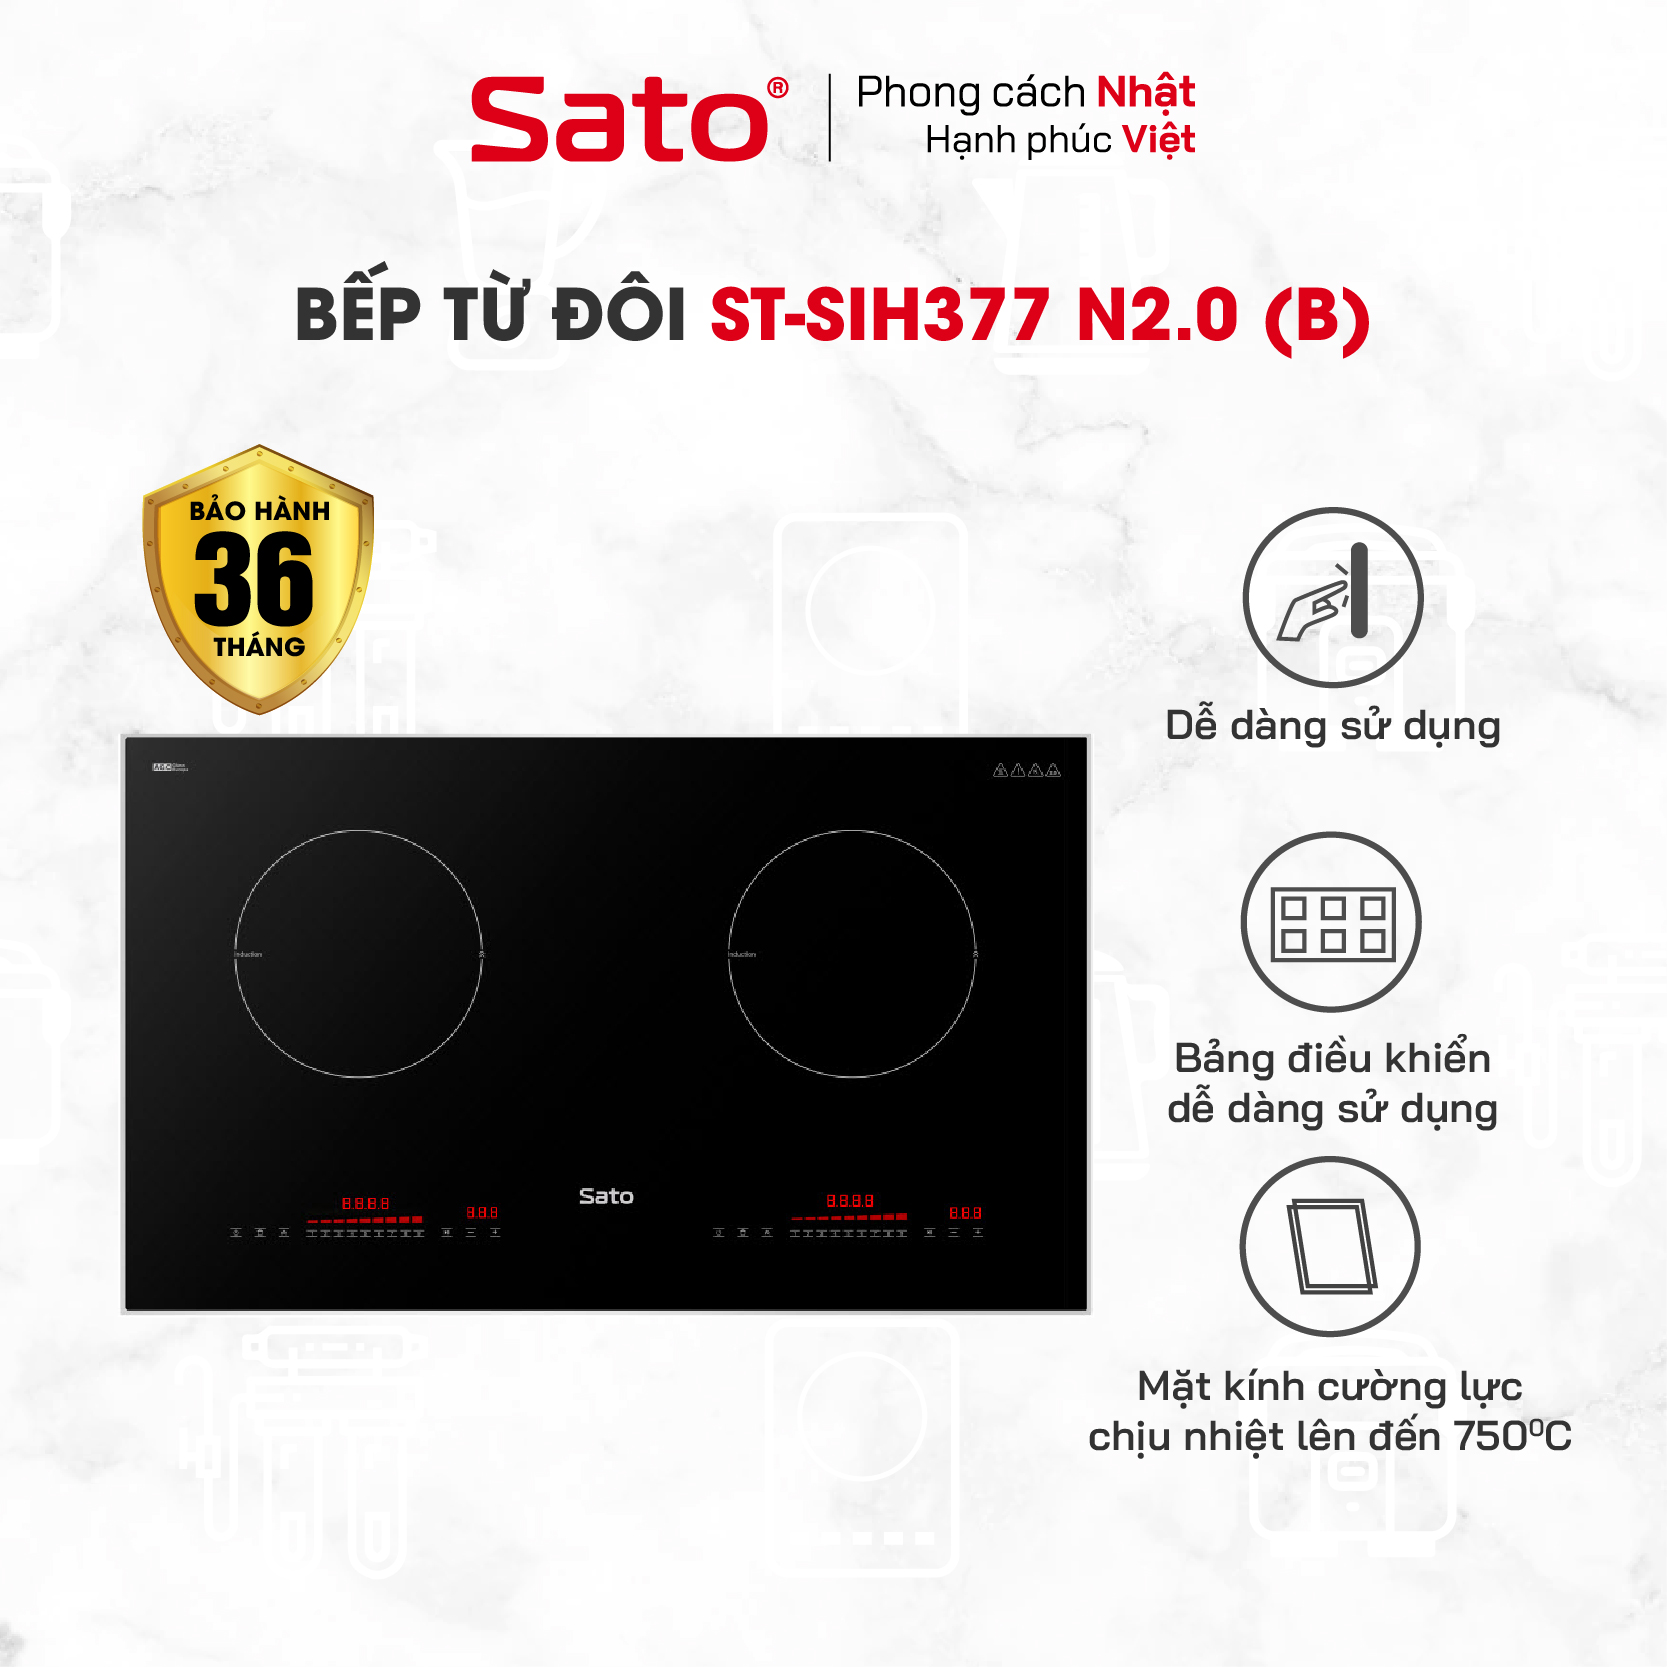 Bếp điện từ thông minh Sato SIH377 N2.0 (B) - Mâm điện từ dùng 100% dây đồng tạo hiệu suất tối đa, tiết kiệm điện năng (Tặng bộ 3 nồi Inox) - Miễn phí vận chuyển toàn quốc - Hàng chính hãng